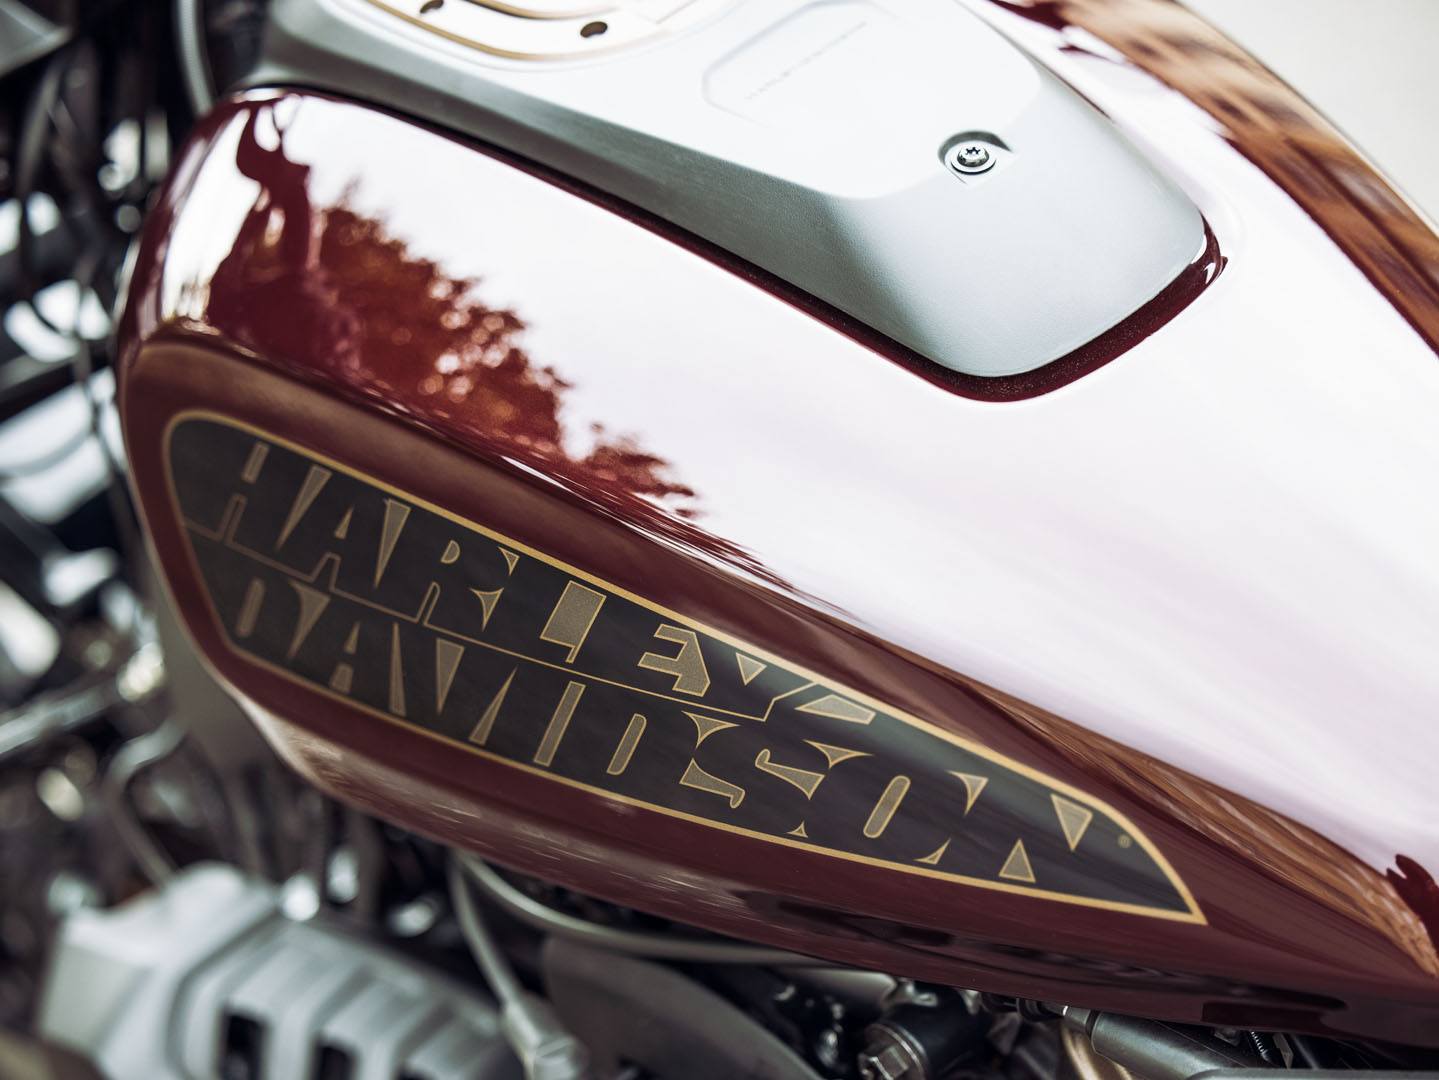 2021 Harley-Davidson Sportster® S in Colorado Springs, Colorado - Photo 5